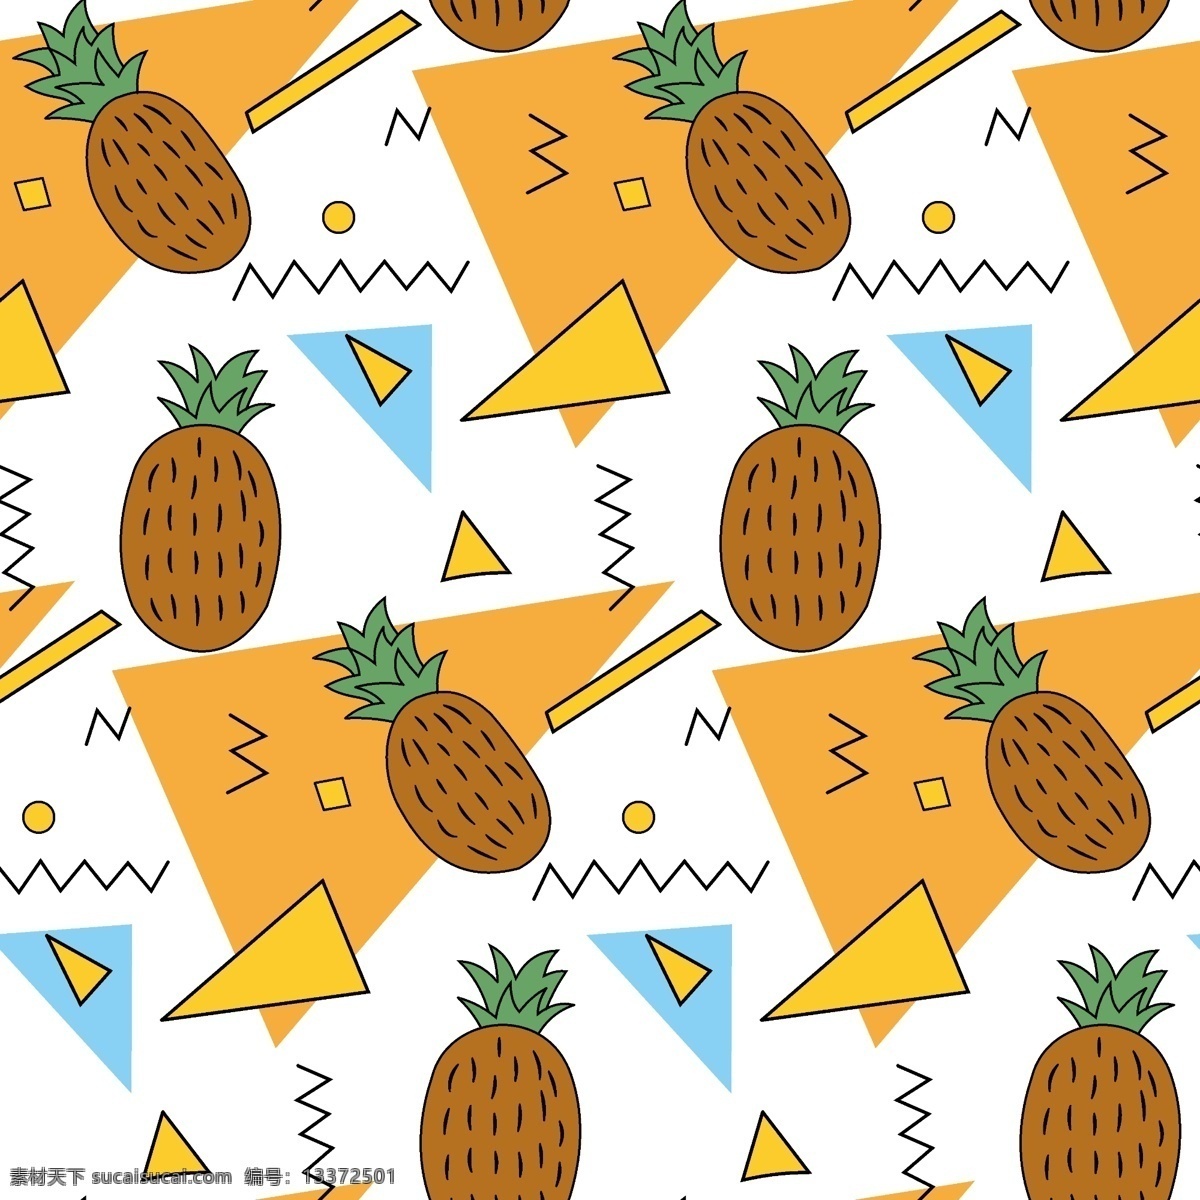 数码印花图片 数码印花 卡通 菠萝 水果 几何